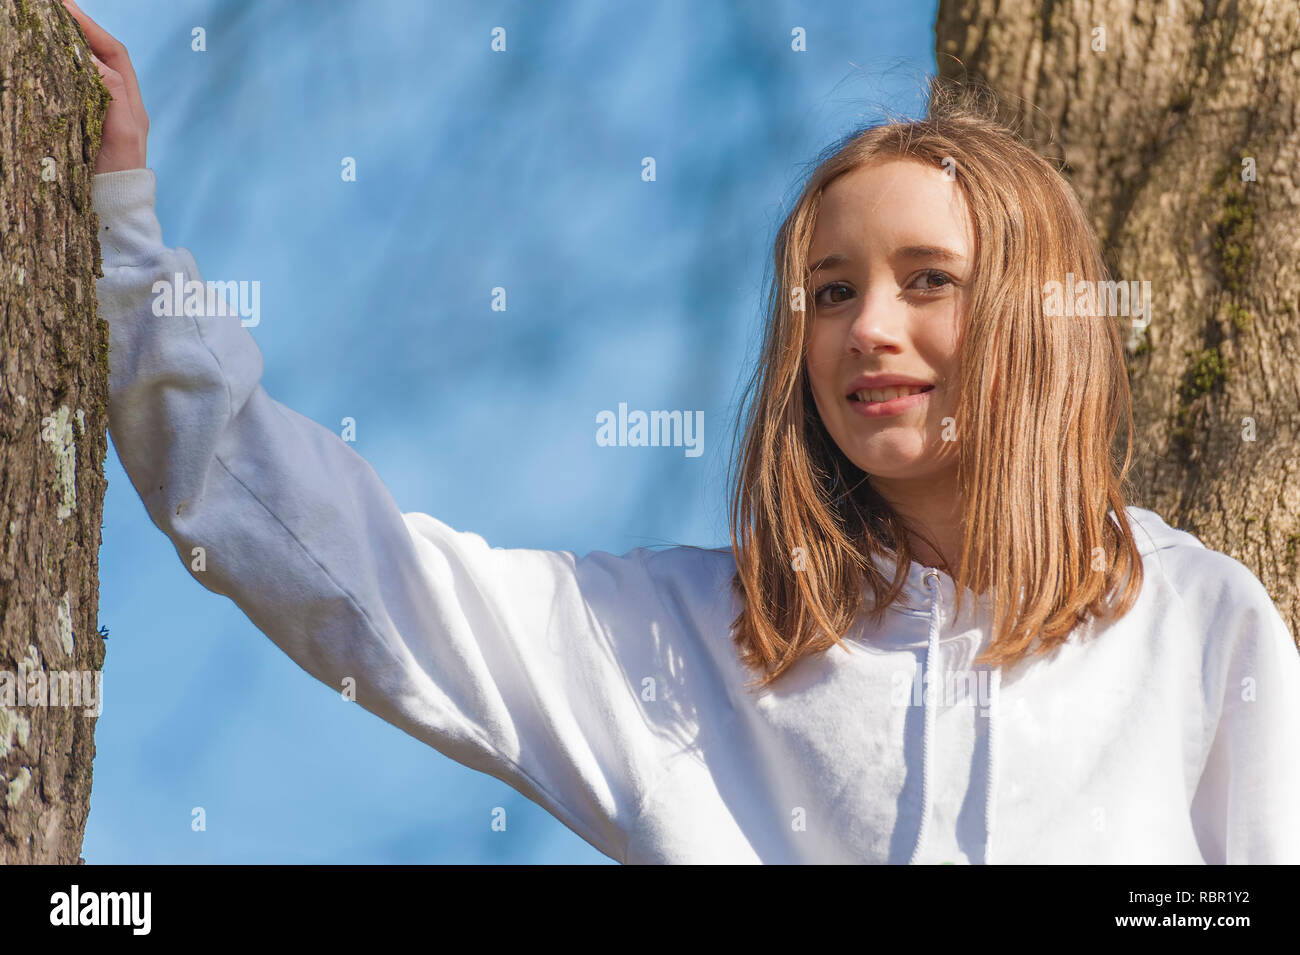 Nahaufnahme von einem jungen Mädchen, das in einem Baum mit braunen Haaren lächelnd und mit Blick auf die Kamera Stockfoto